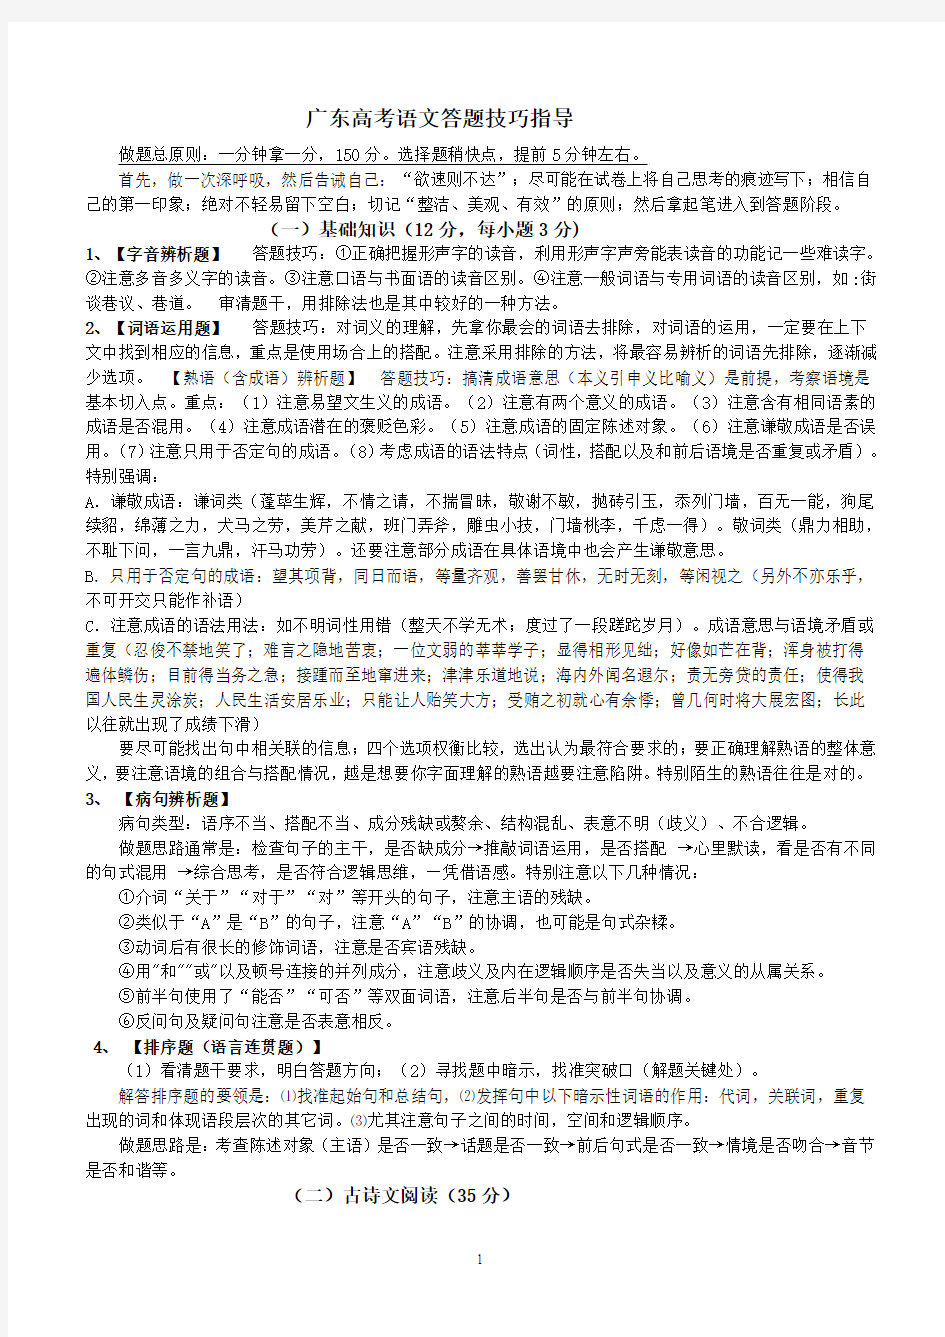 广东高考语文24个小题答题方法指导精华版